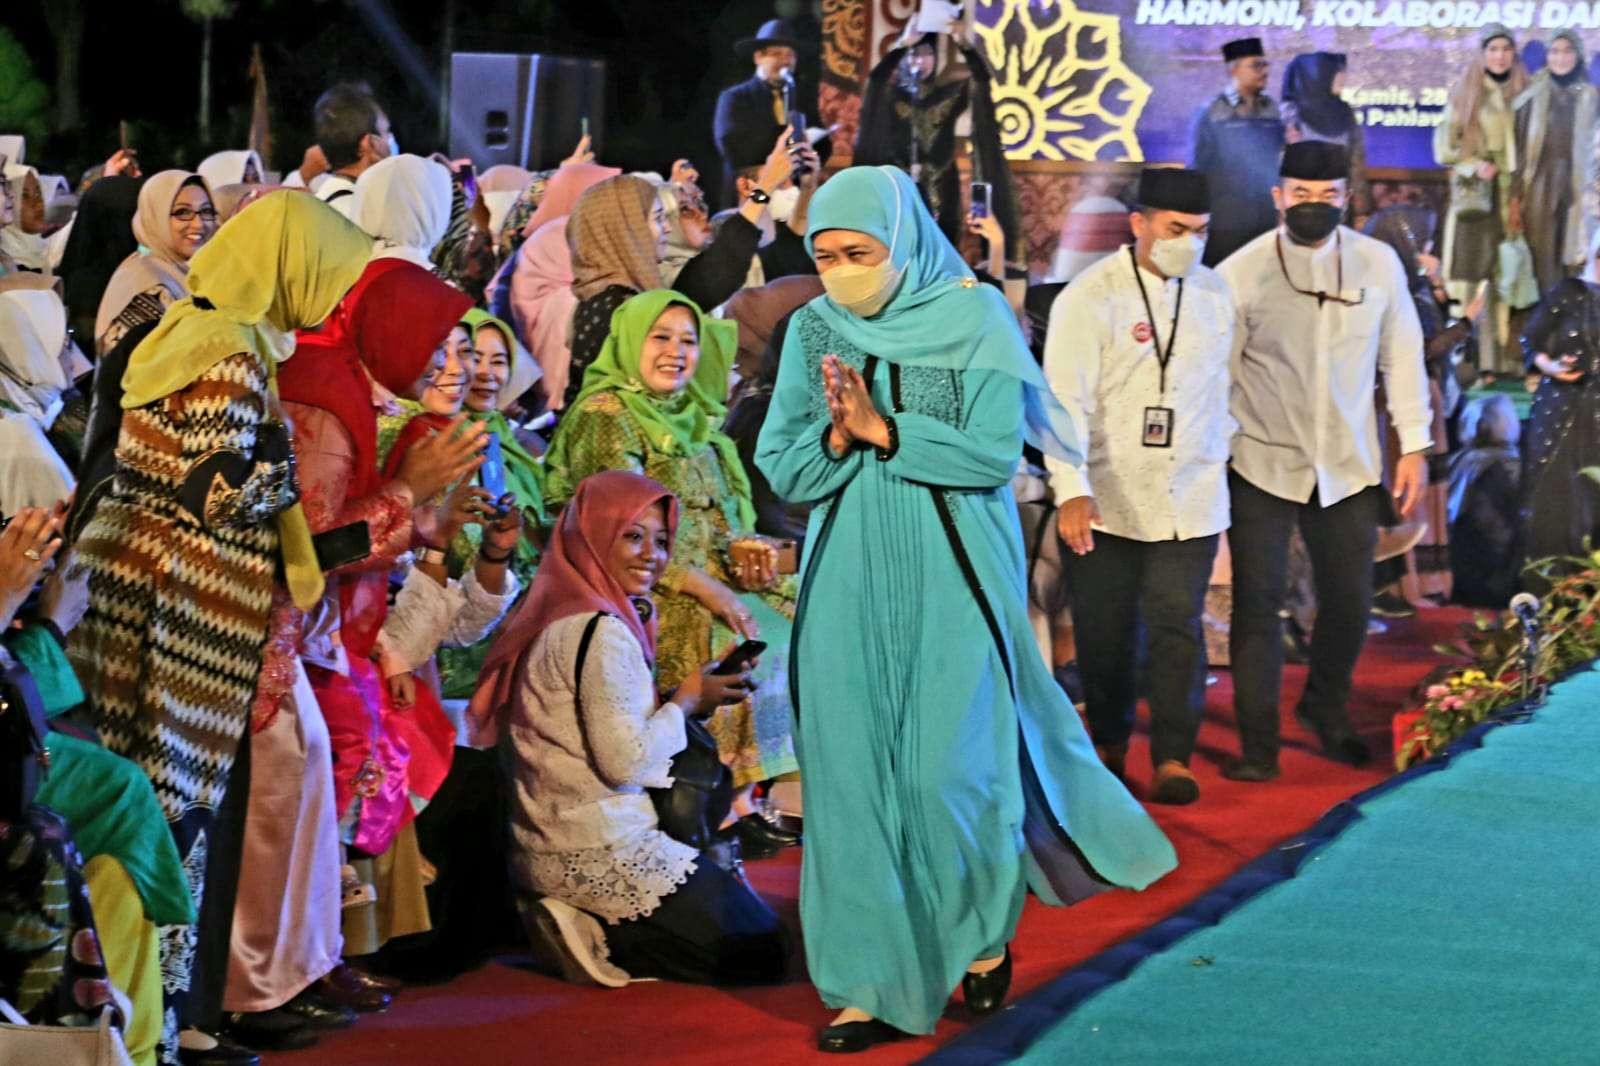 Gubernur Jatim, Khofifah Indar Parawansa berpesan agar masyarakat Jatim dapat bersama-sama bangkit dari keterpurukan di momen Tahun Baru Islam 1444 H. (Foto: Istimewa)